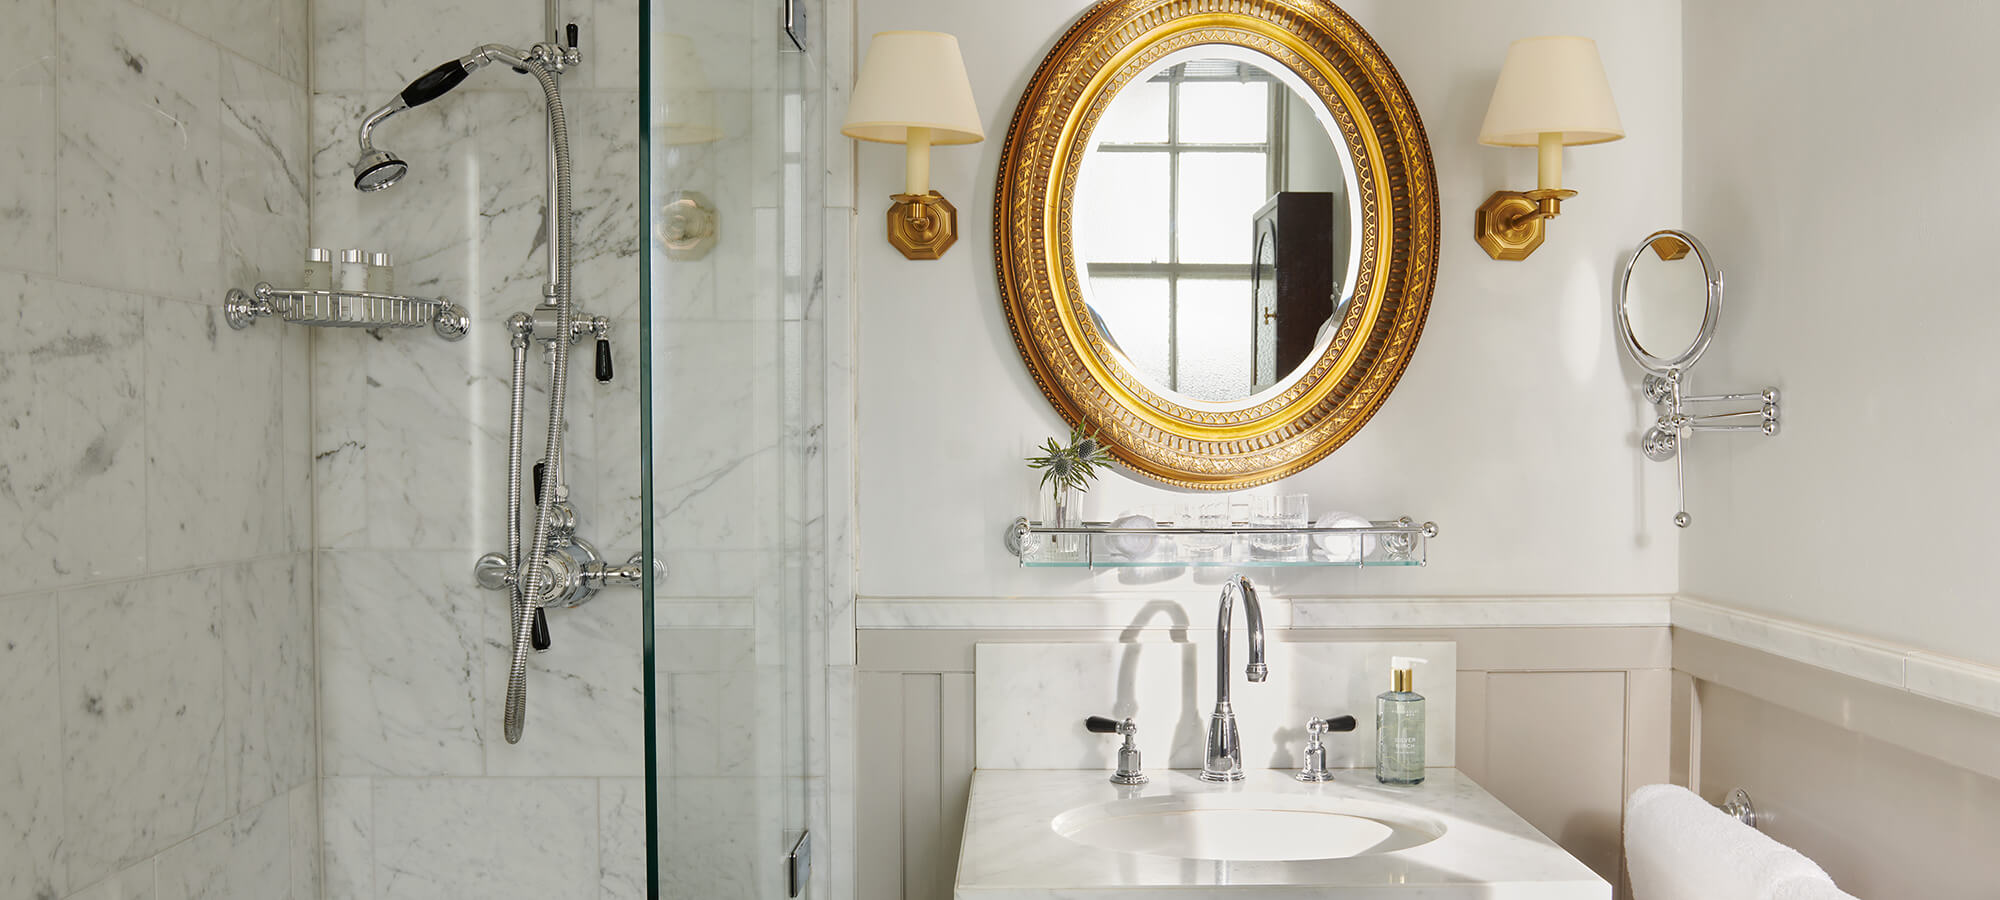 Un grand miroir doré au-dessus d'un lavabo en porcelaine blanche dans une chambre Country.